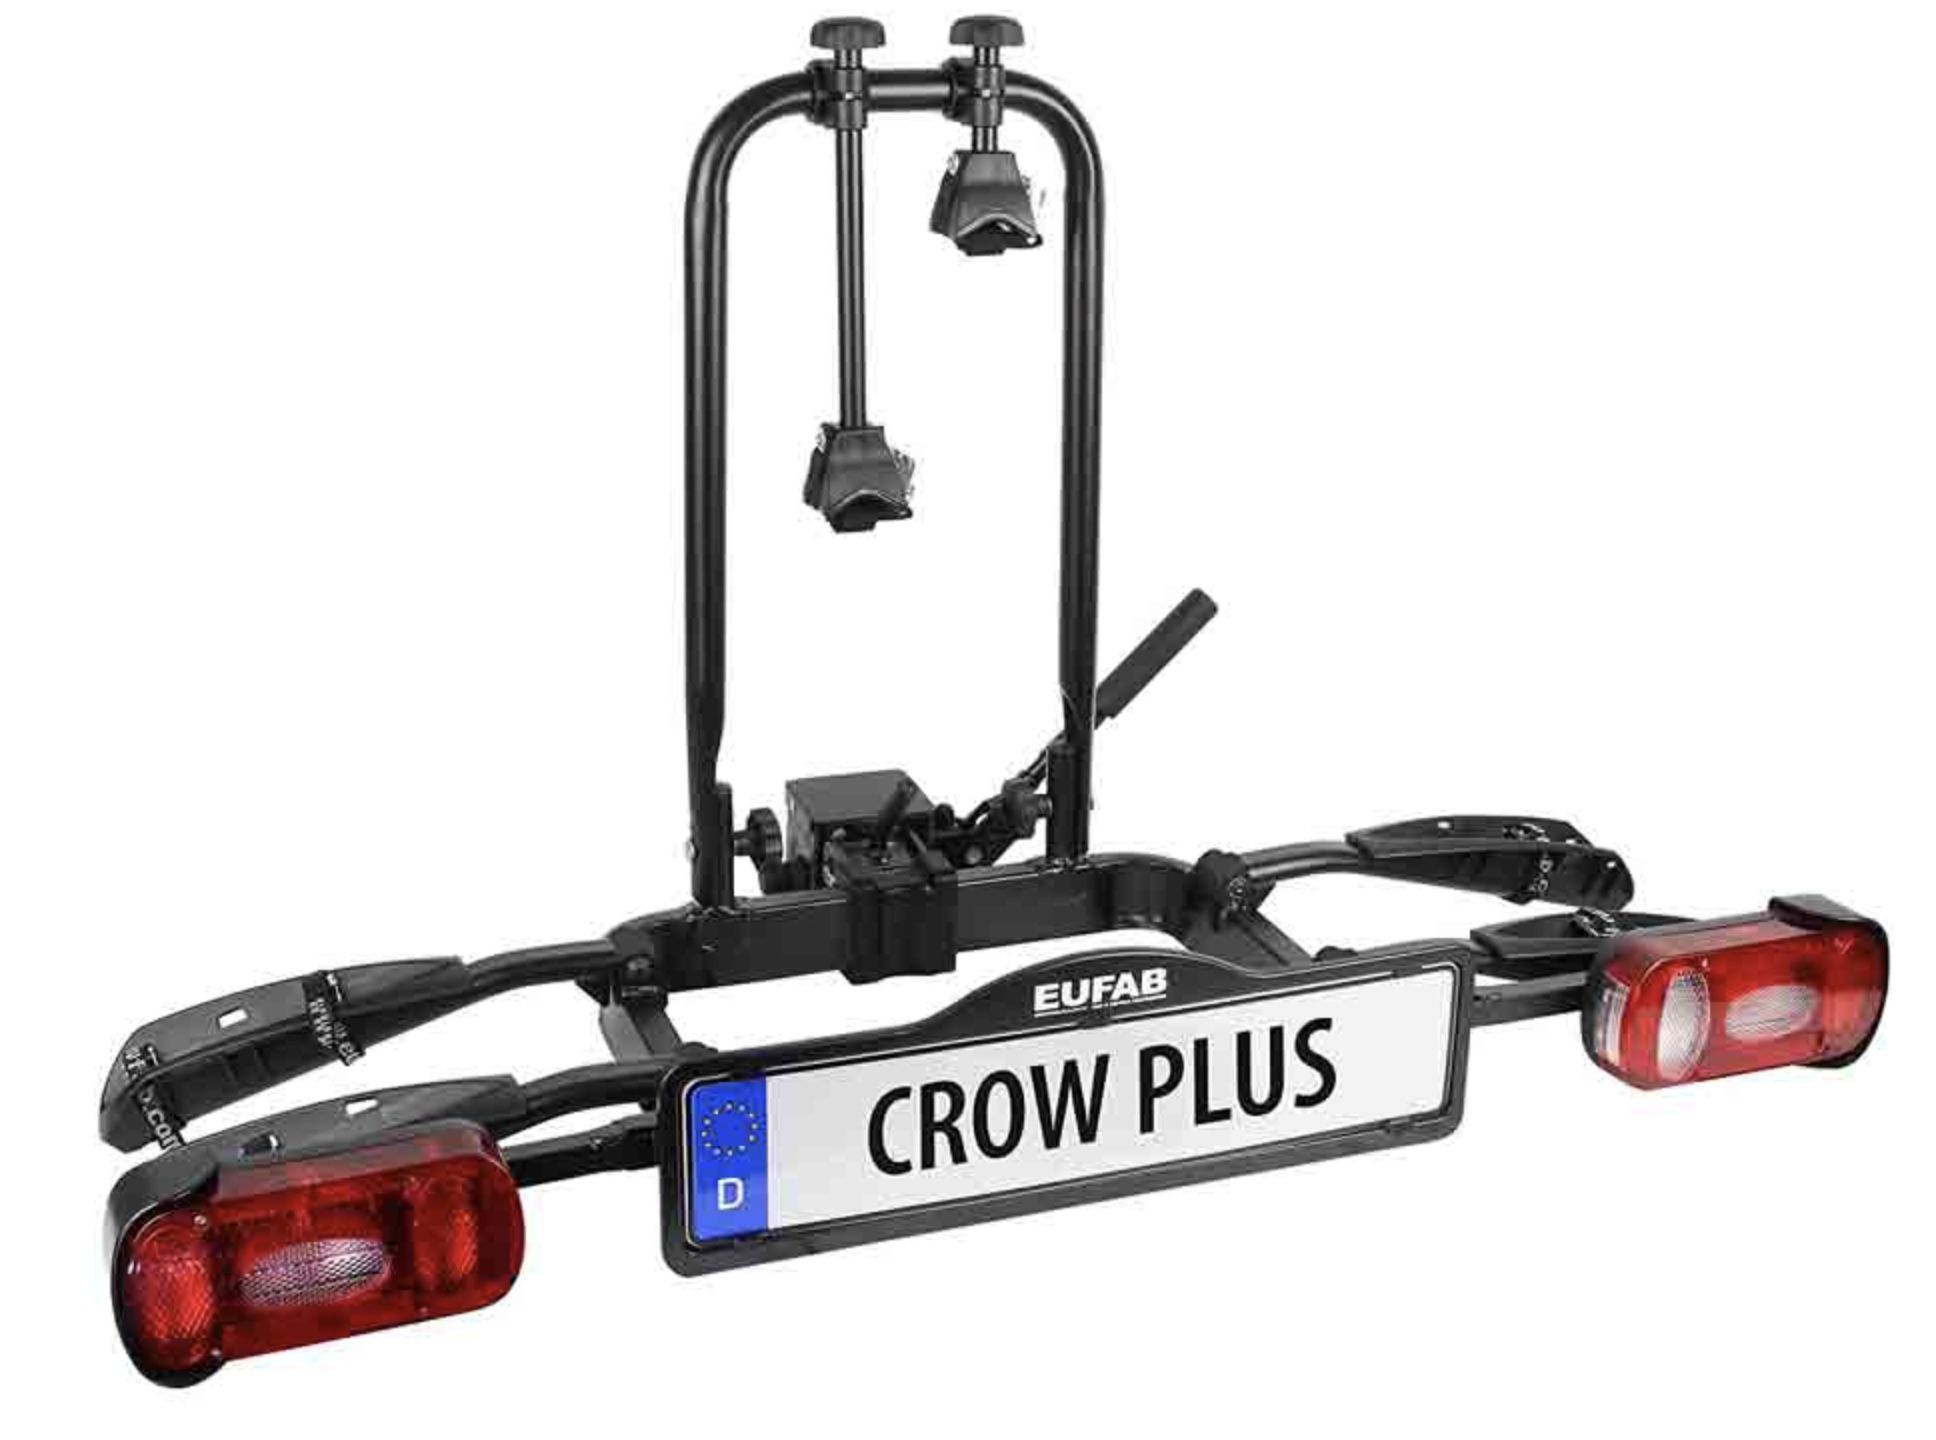 Eufab Crow Plus (11582) Fahrrad Kupplungsträger für 2 Fahrräder für 199,99€ (statt 267€)   Abholung